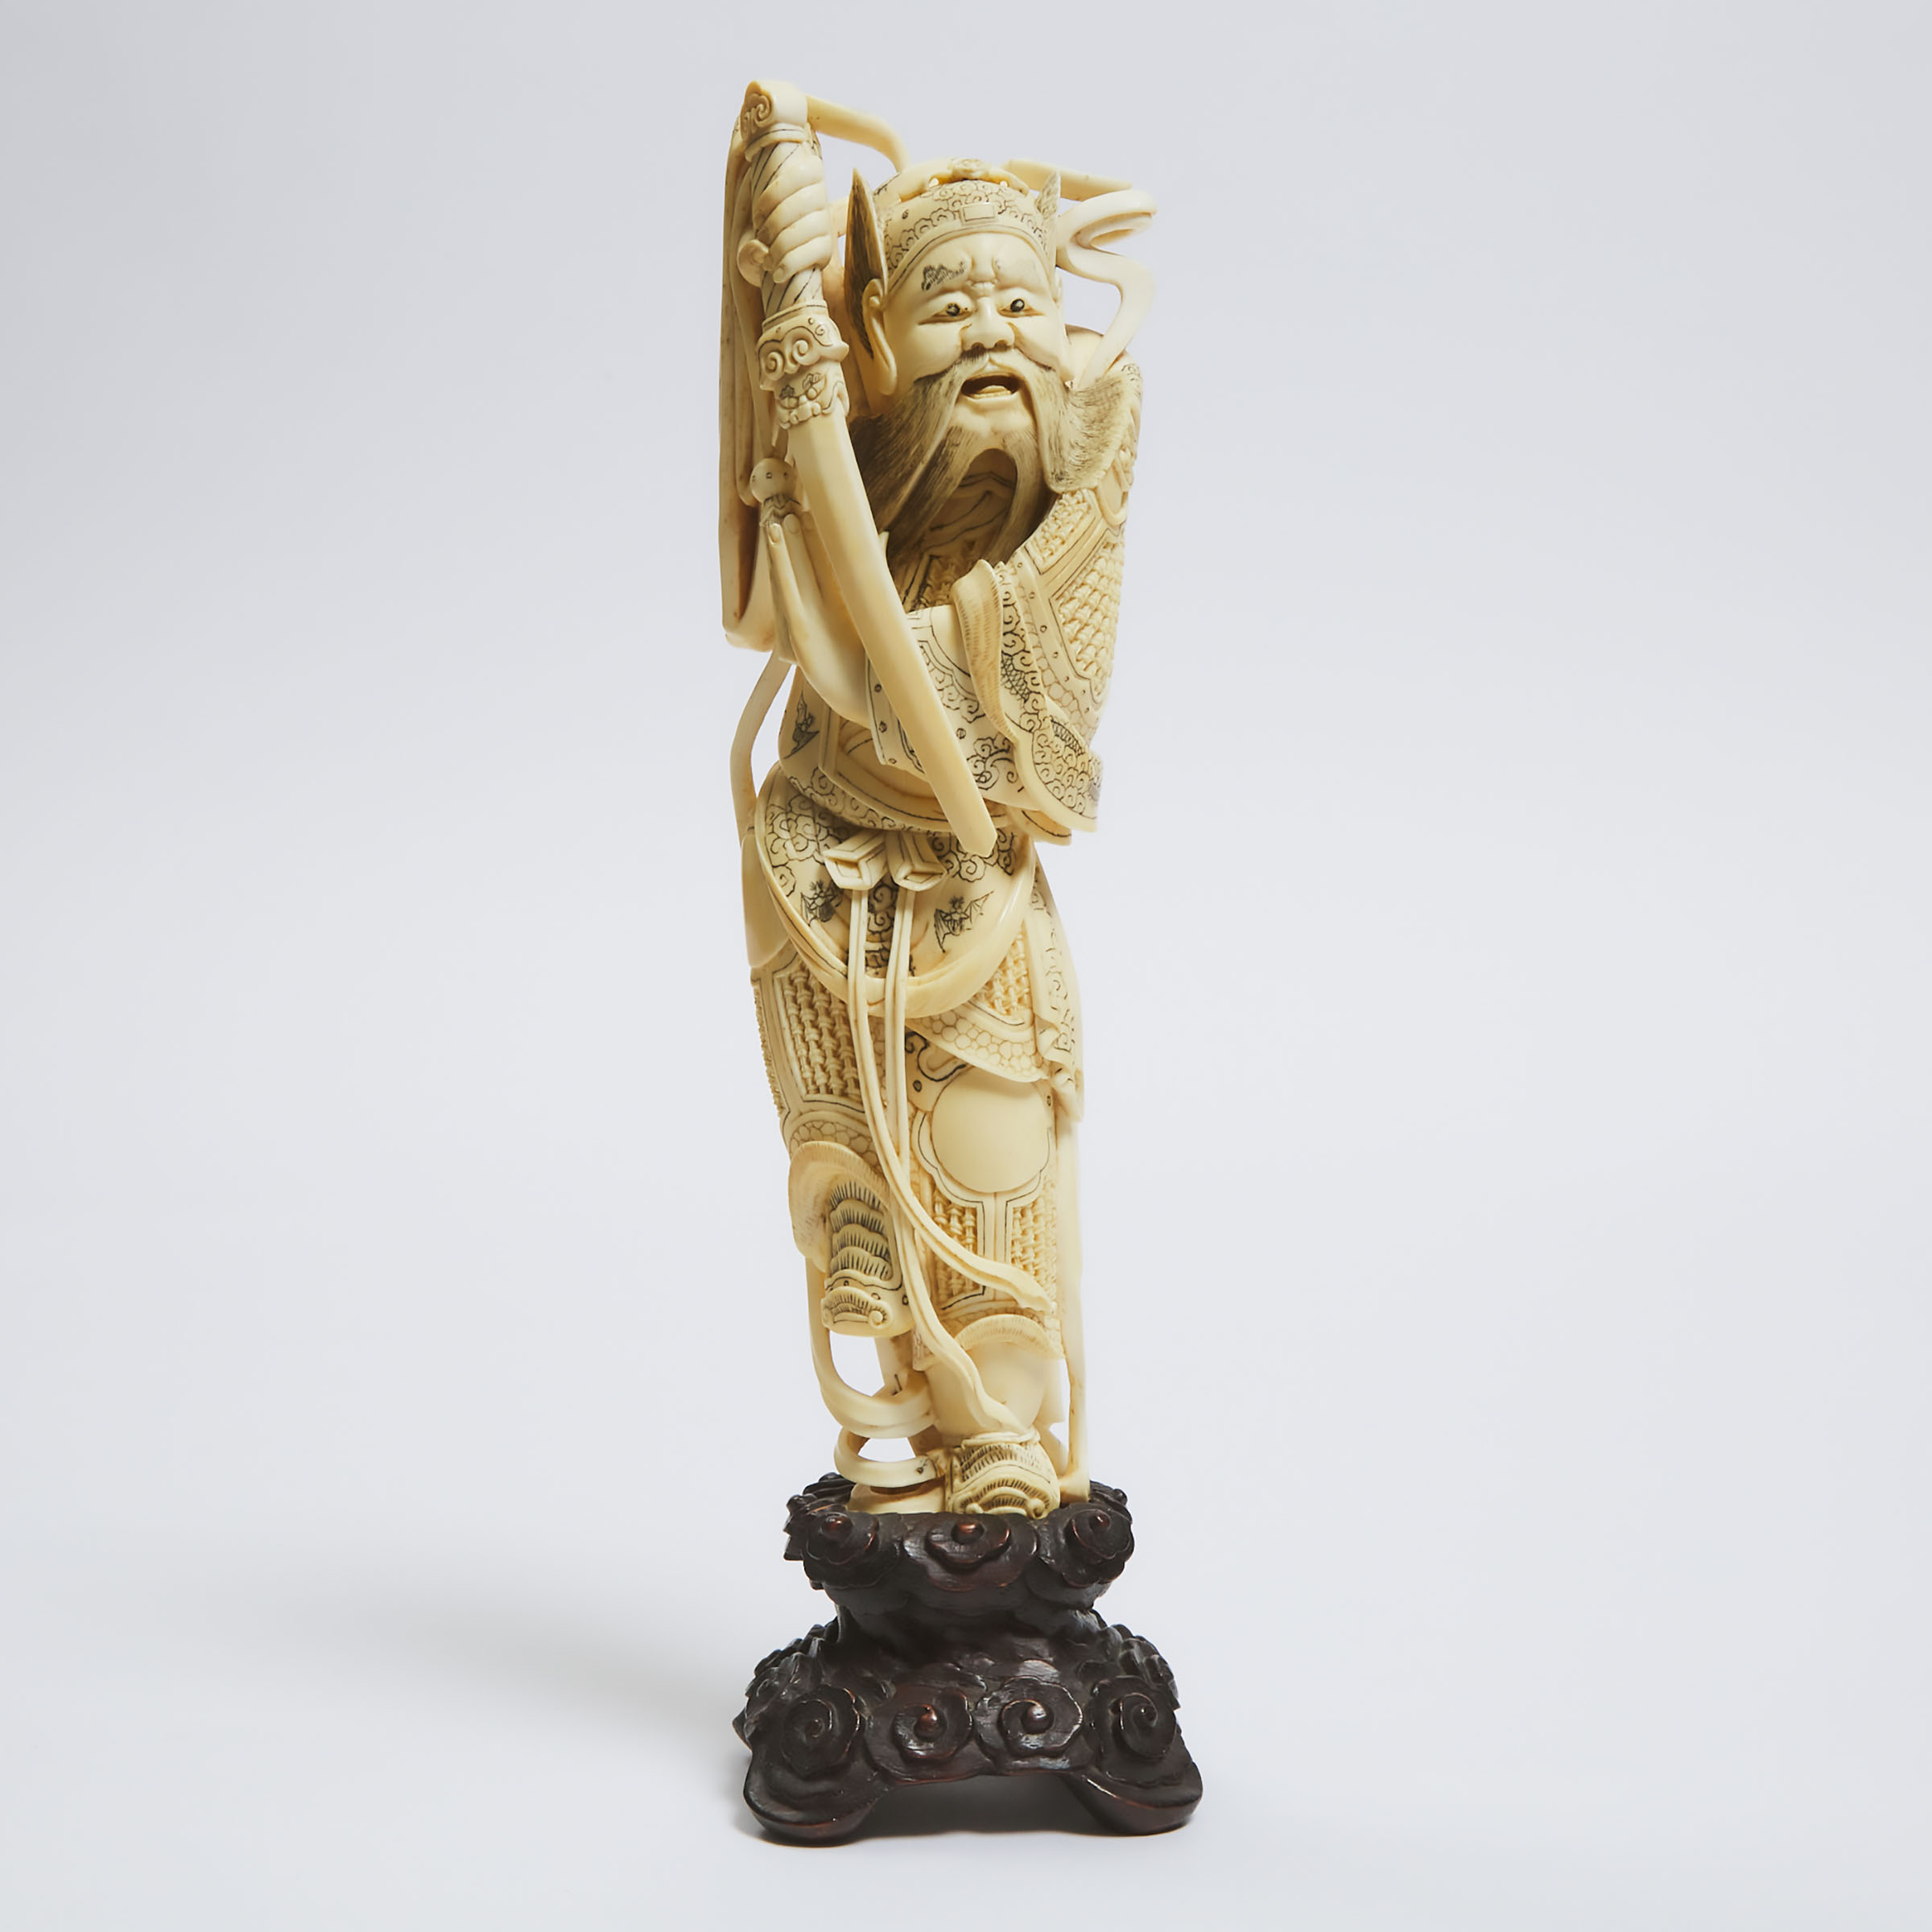 A Chinese Ivory Figure of Zhong Kui,